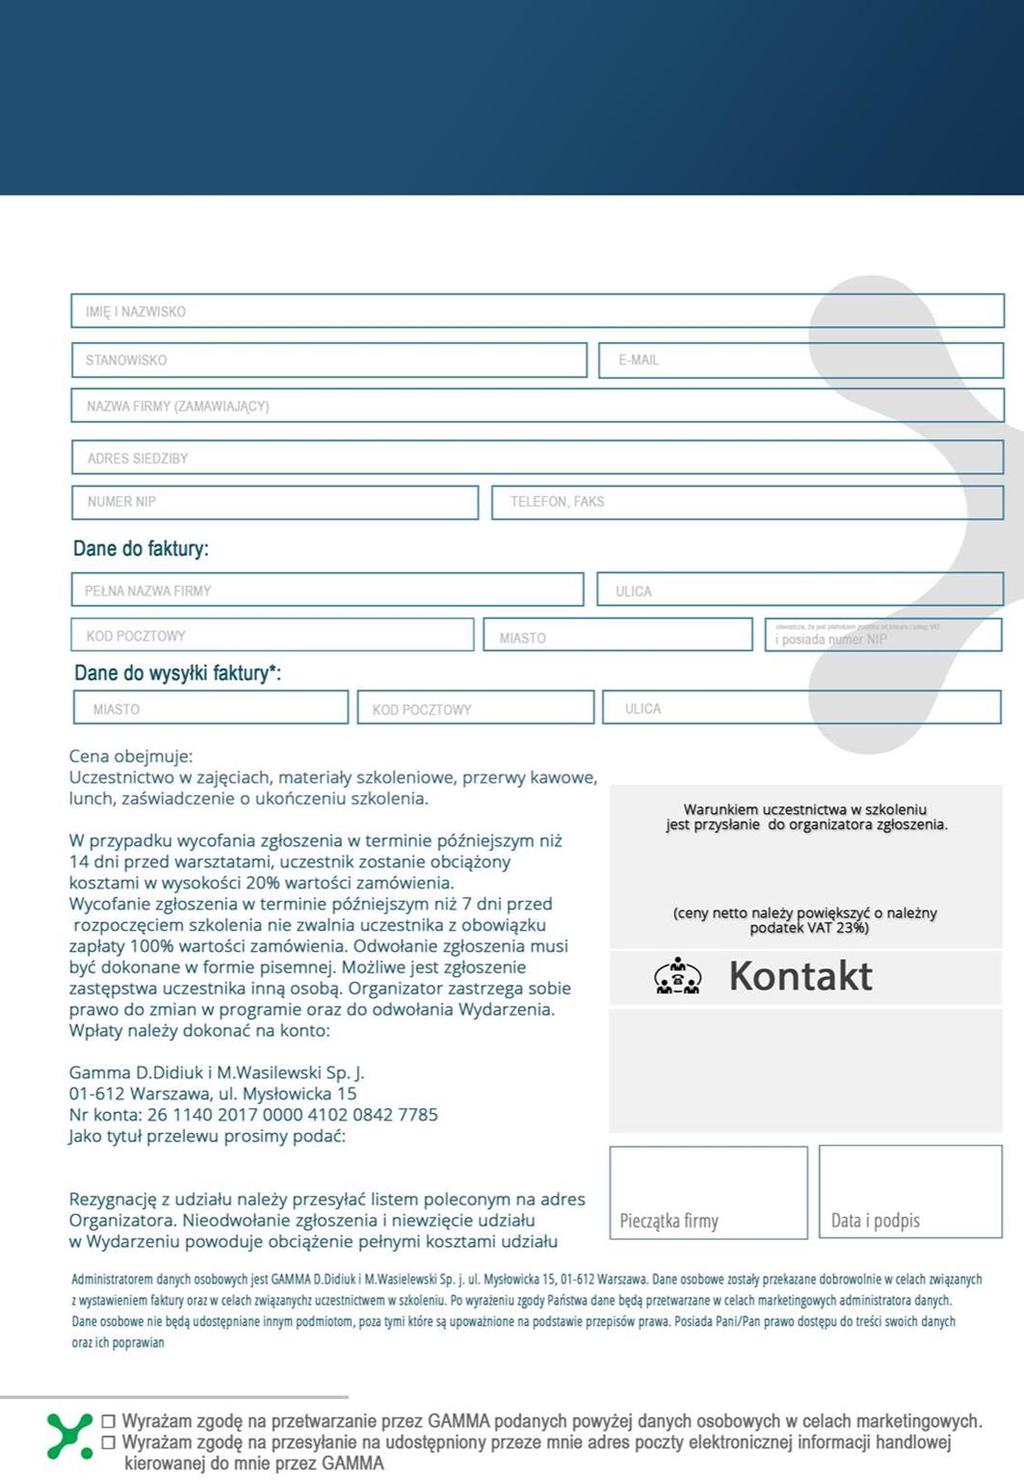 Prosimy o wypełnienie i przesłanie formularza faksem na numer (22) 266 08 51 lub po zeskanowaniu, na adres e-mail: monika.romanowska@projektgamma.pl - 1.